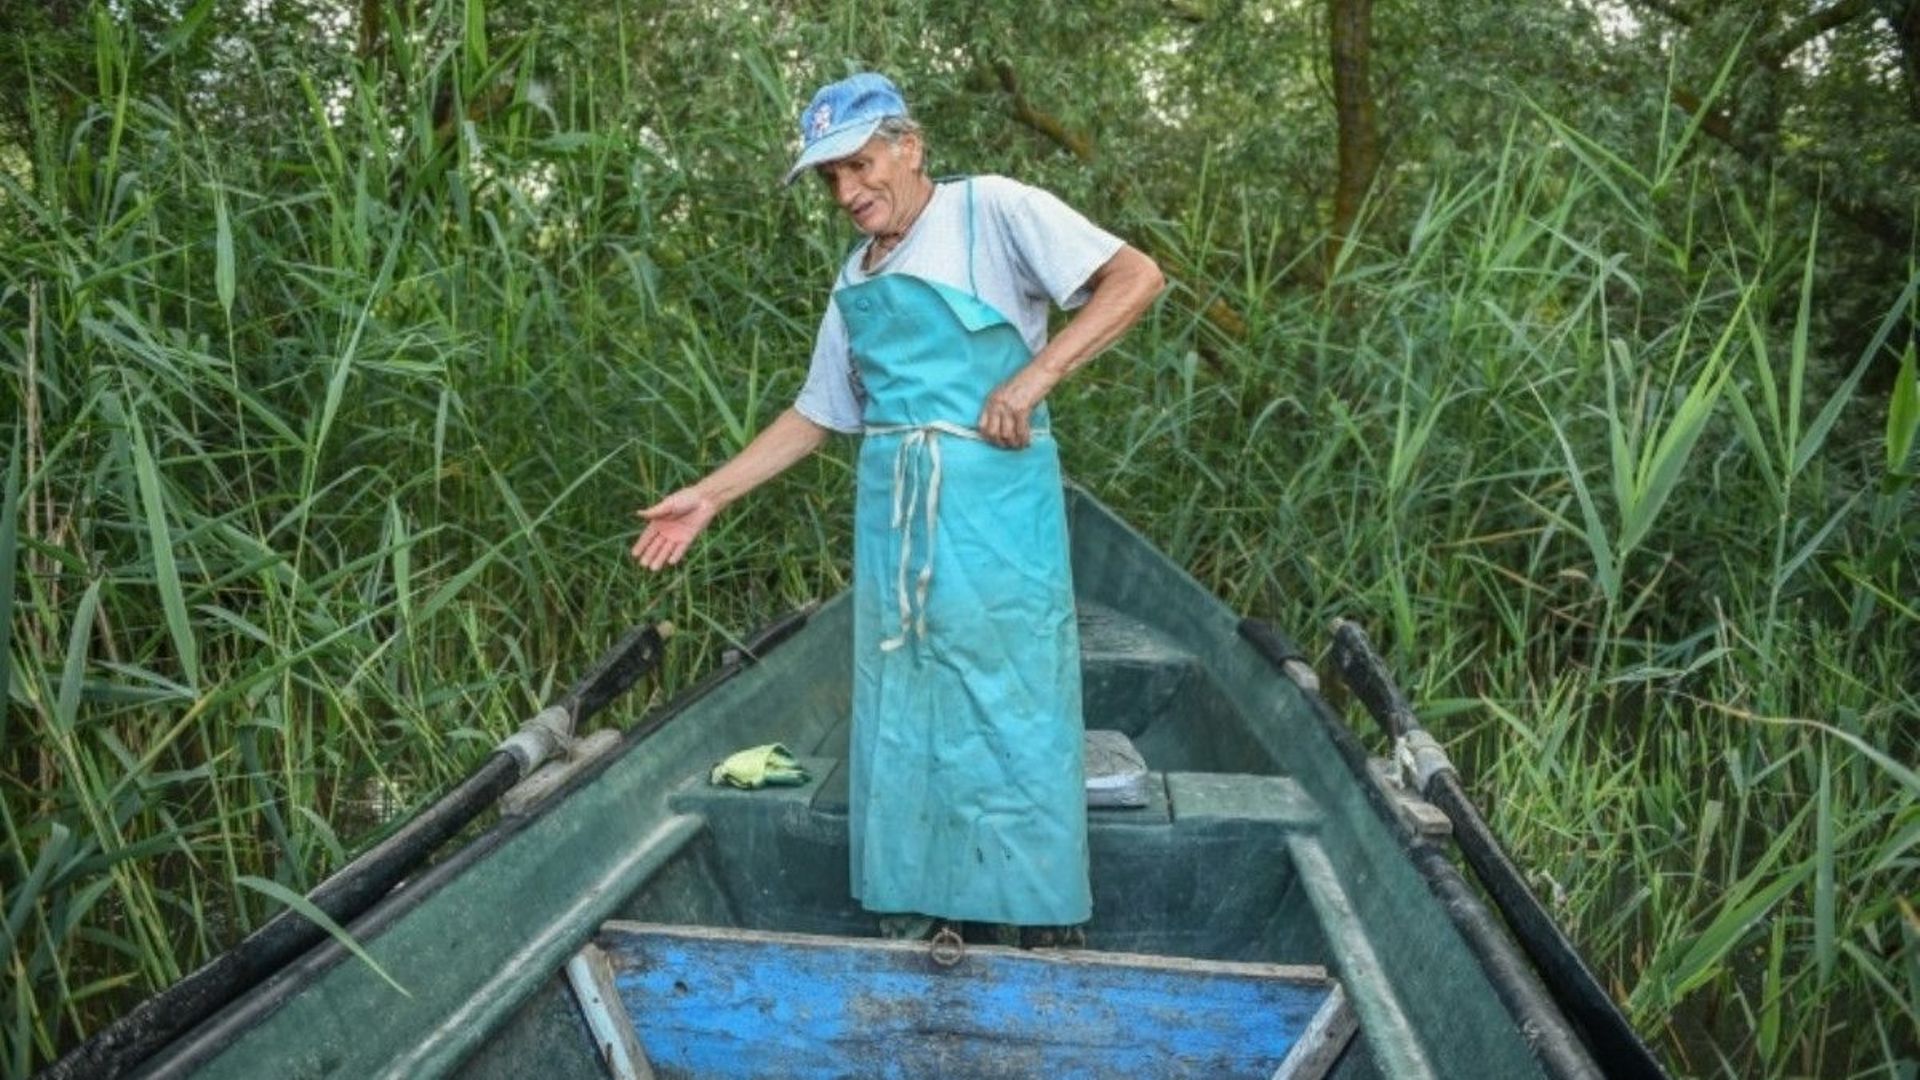 Iosif Acsente, prépare son filet de pêche, près du village de Sfantu Gheorghe, à l'embouchure du Danube le 17 juin 2020.